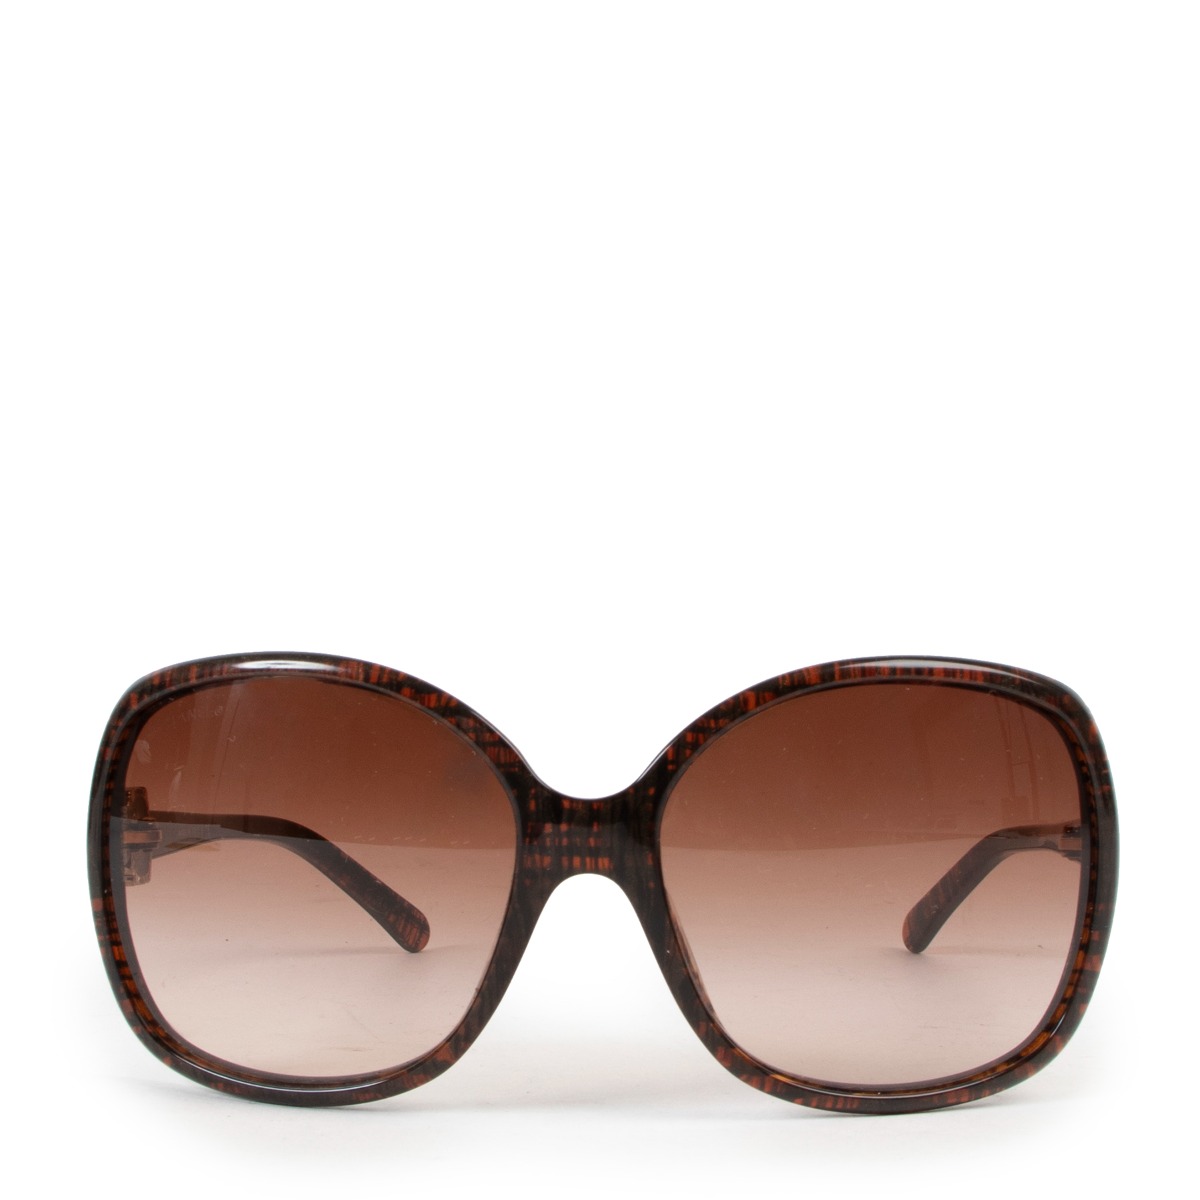 Sunglasses Chanel Brown in Plastic - 26336537